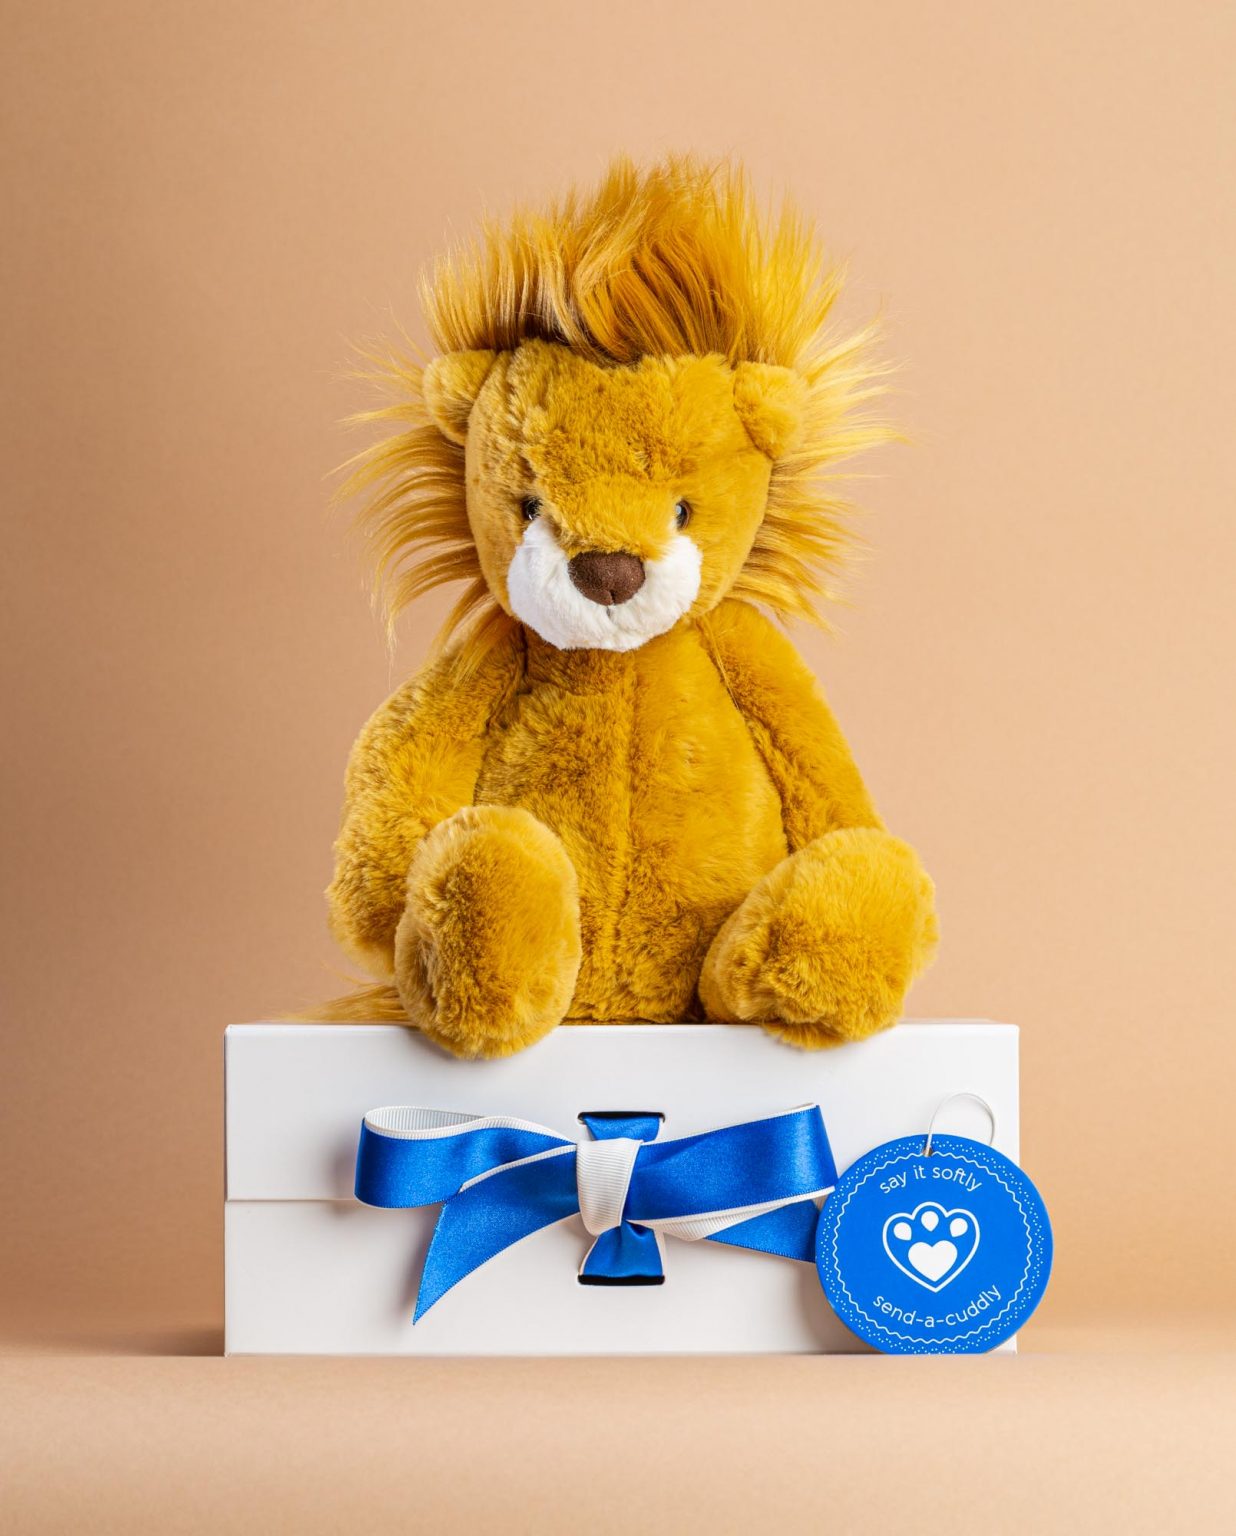 Wumper Lion Soft Toy - Send a Cuddly